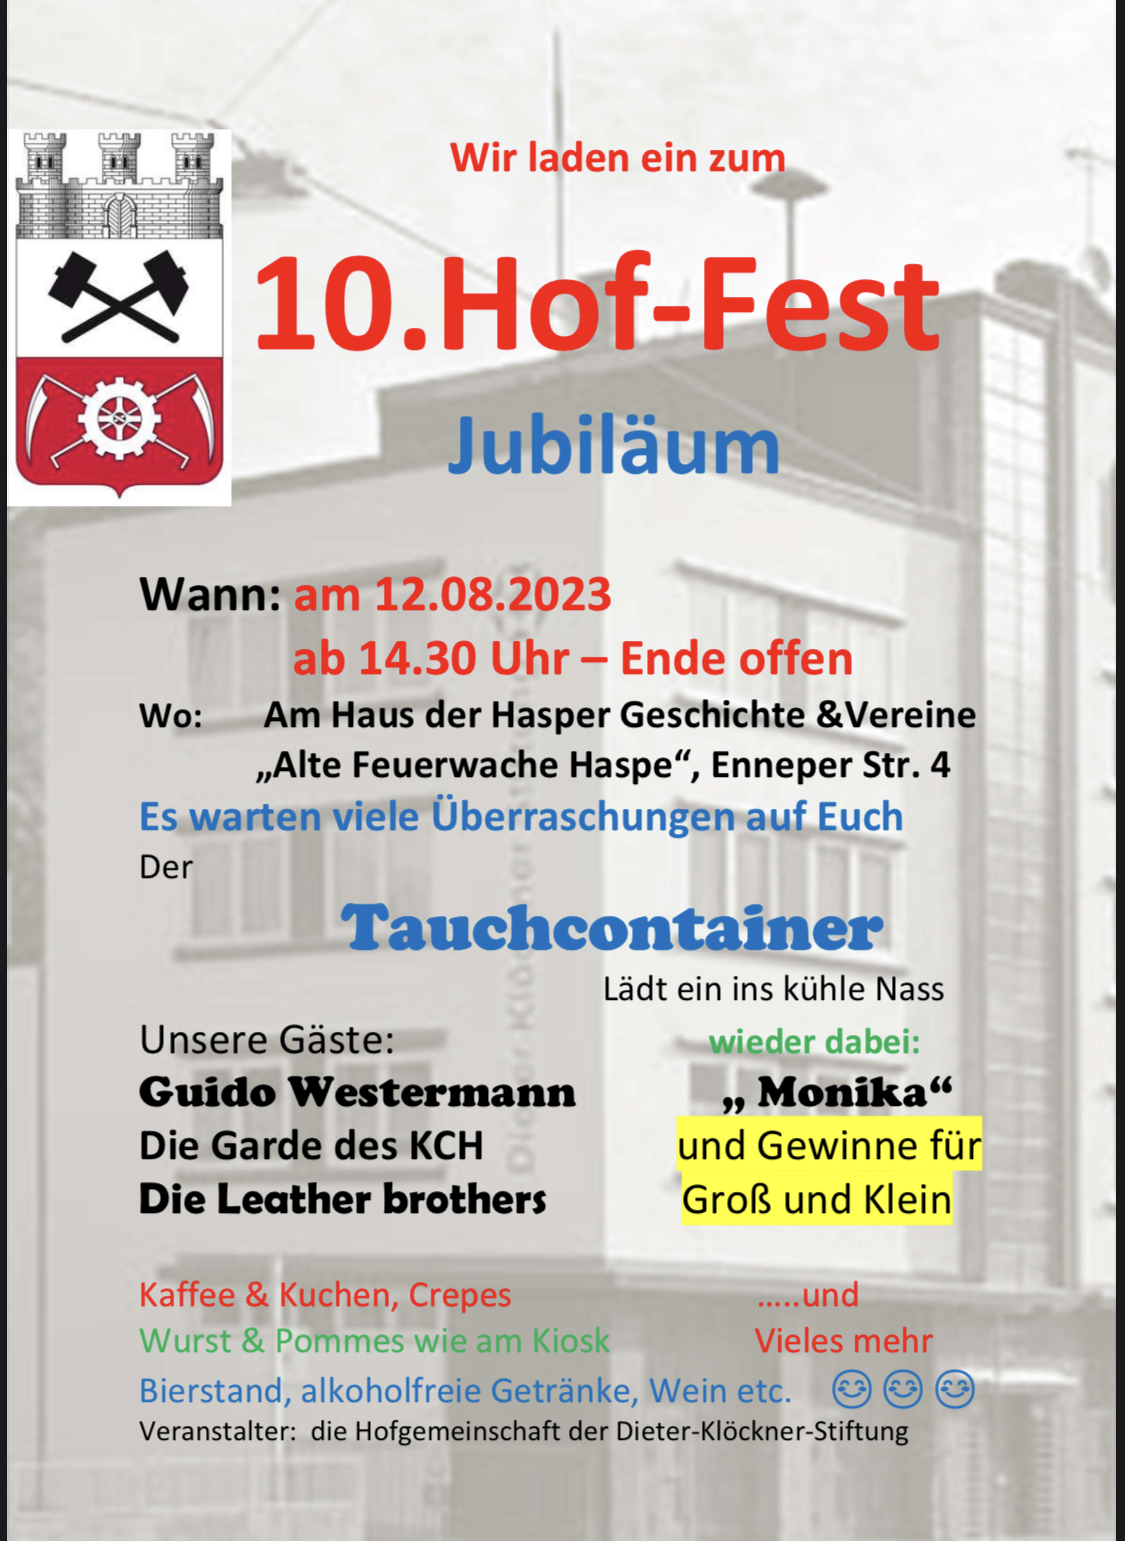 10. Hof-Fest am 12.08.2023 ab 14:30 Uhr